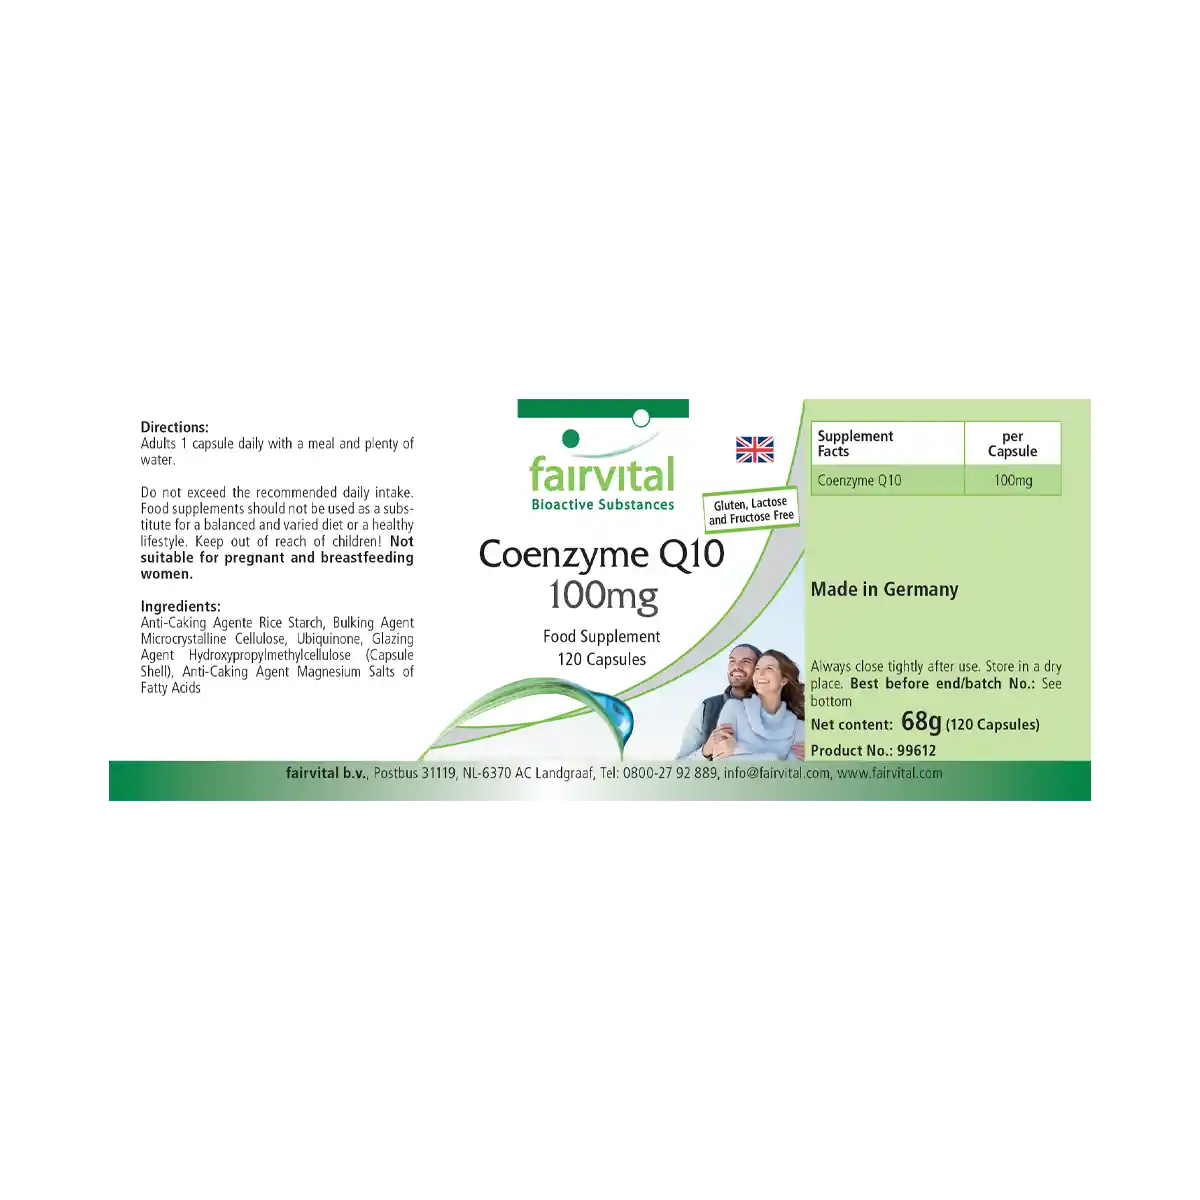 Co-Enzym Q10 100mg - 120 capsules